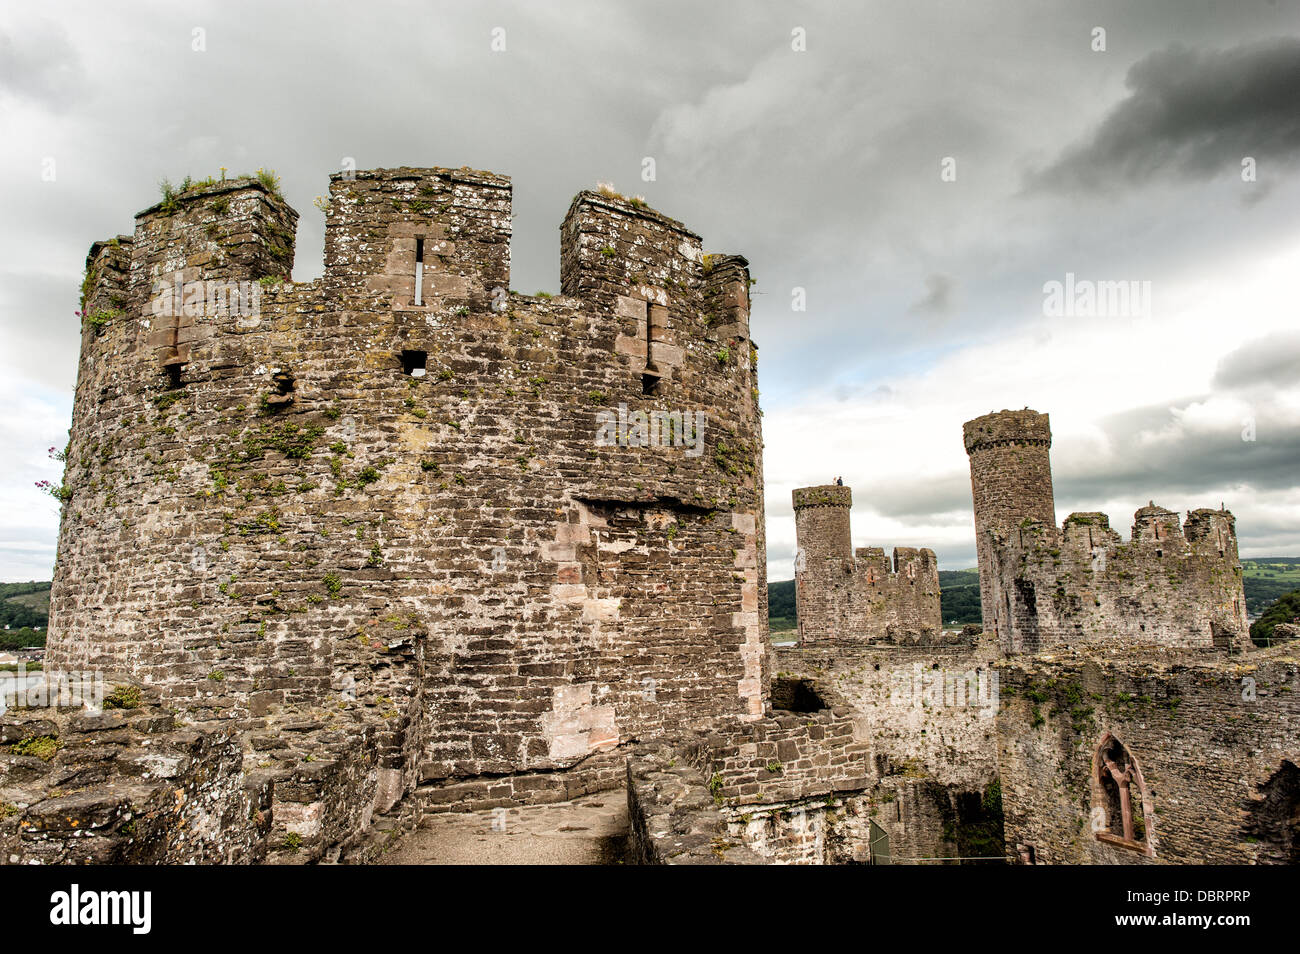 CONWY, Wales Conwy Castle ist eine mittelalterliche Burg gebaut von Edward ich im späten 13. Jahrhundert. Es ist Teil einer ummauerten Stadt Conwy und nimmt einen strategischen Punkt auf dem Fluss Conwy. Es ist als Weltkulturerbe gelistet. Stockfoto